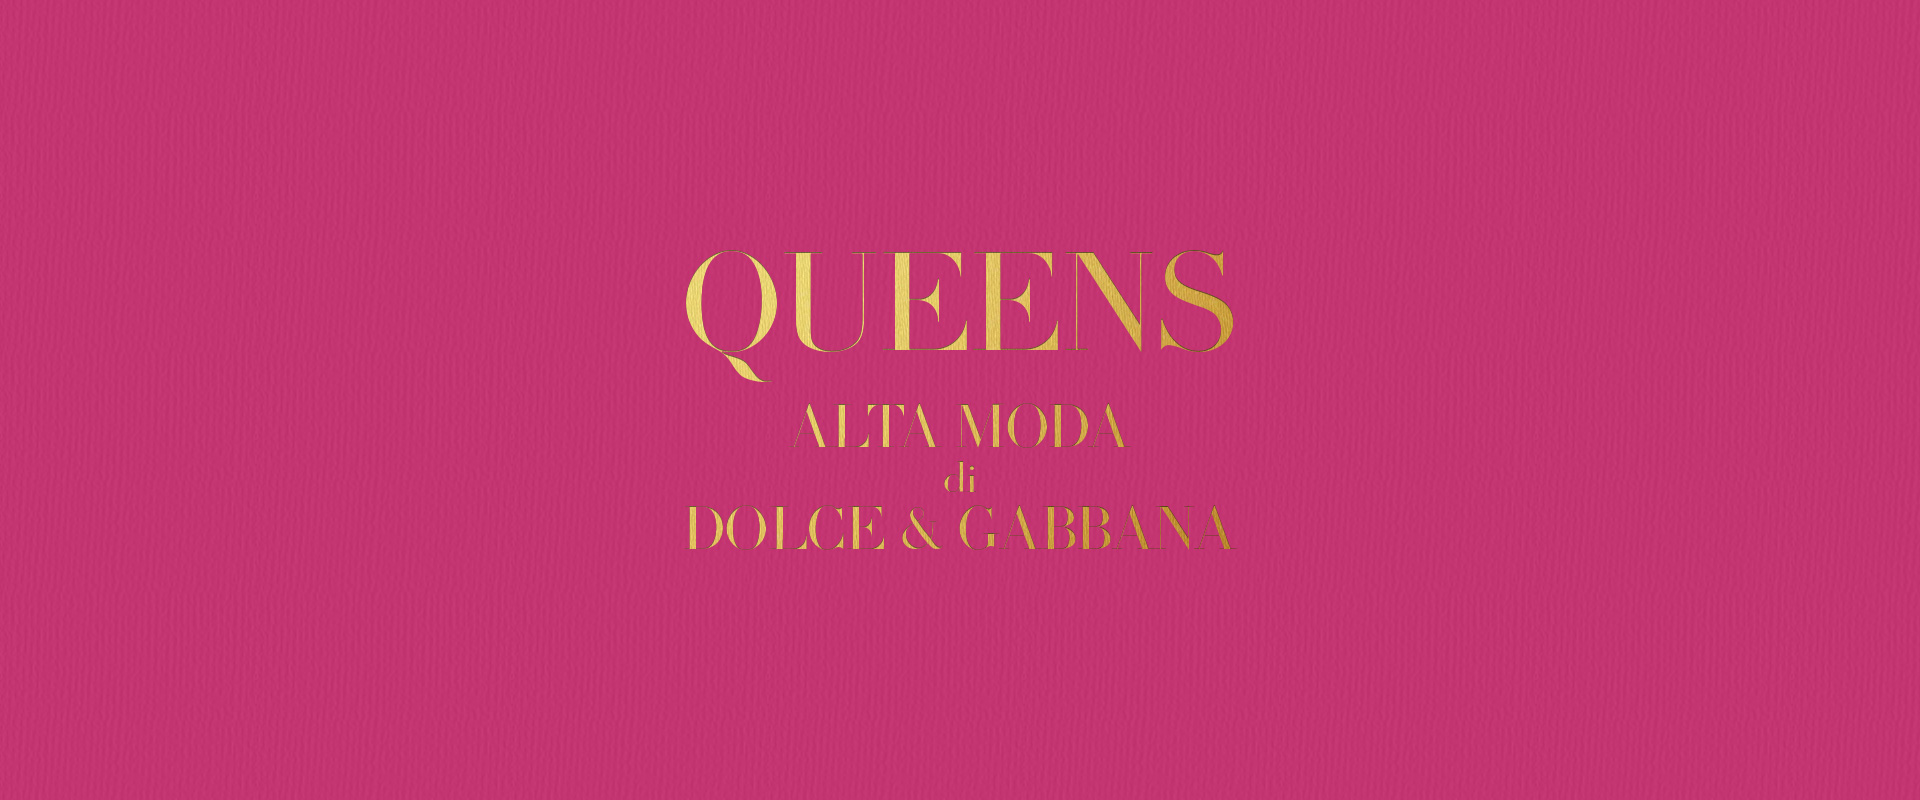 dolce-and-gabbana-libro-queens-alta-moda-hero-banner